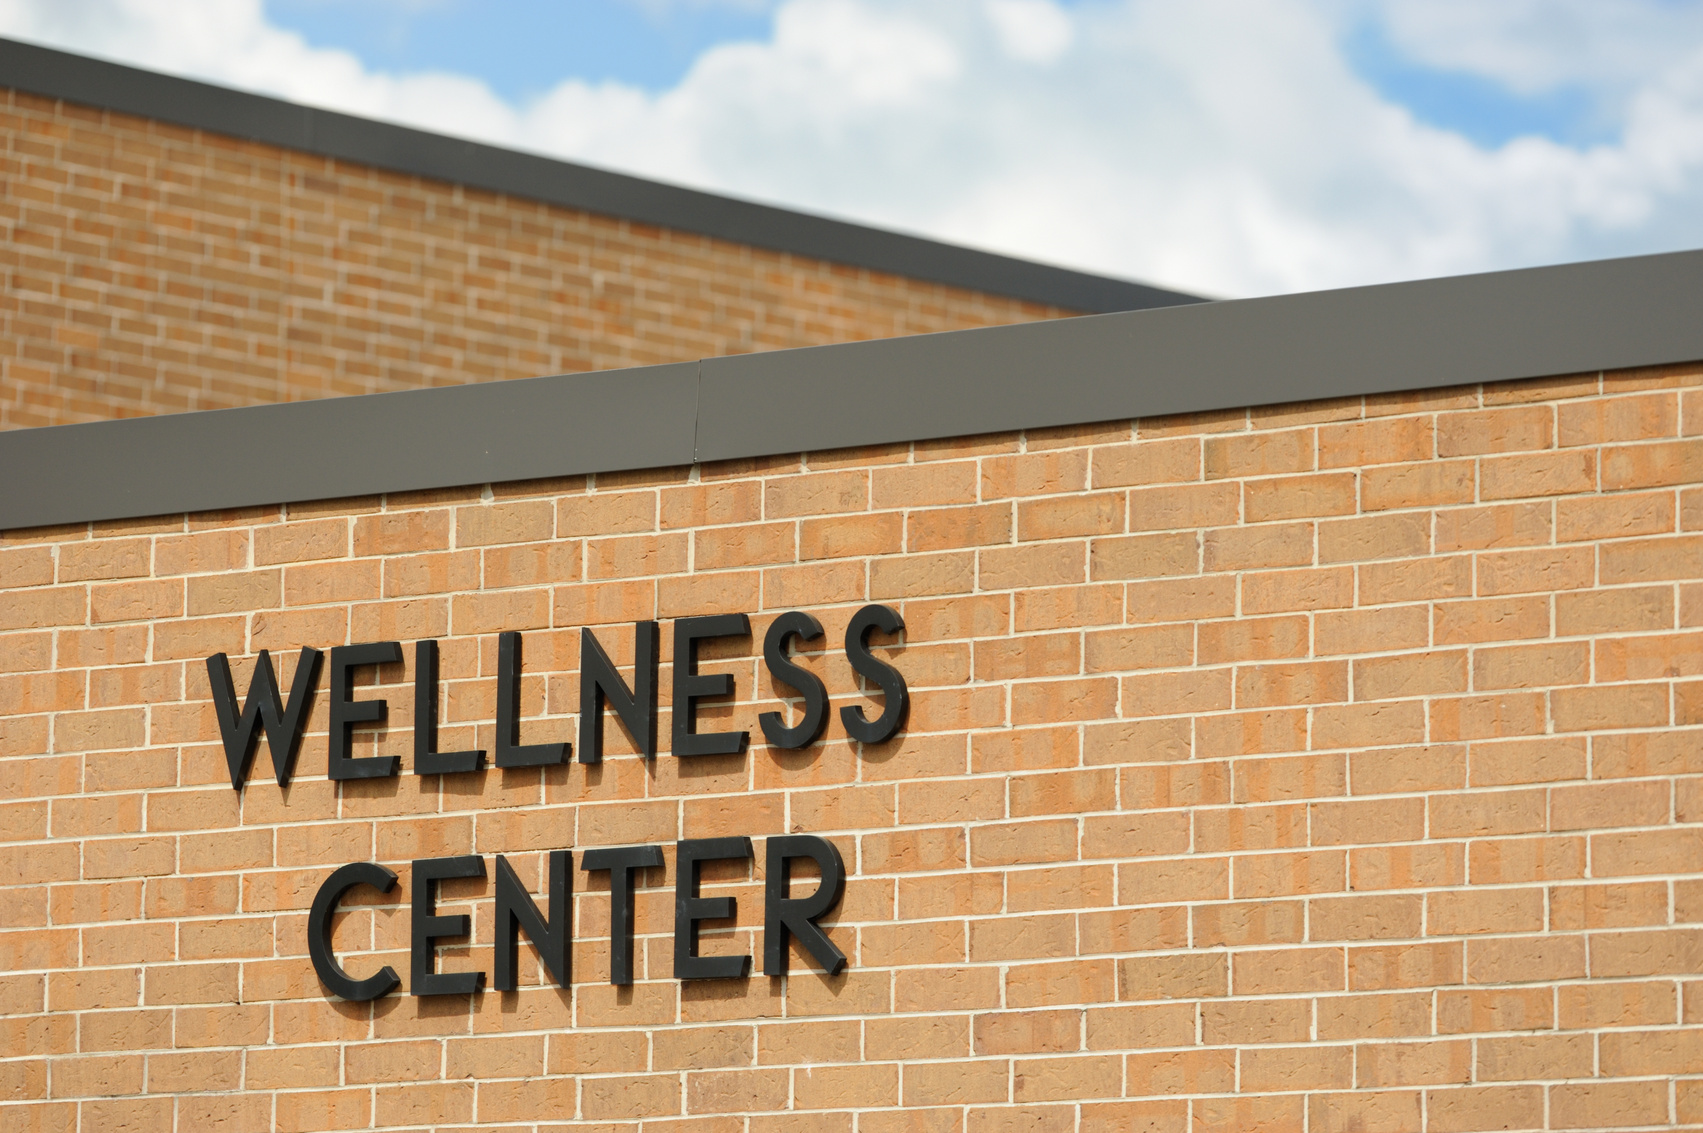 Wellness center